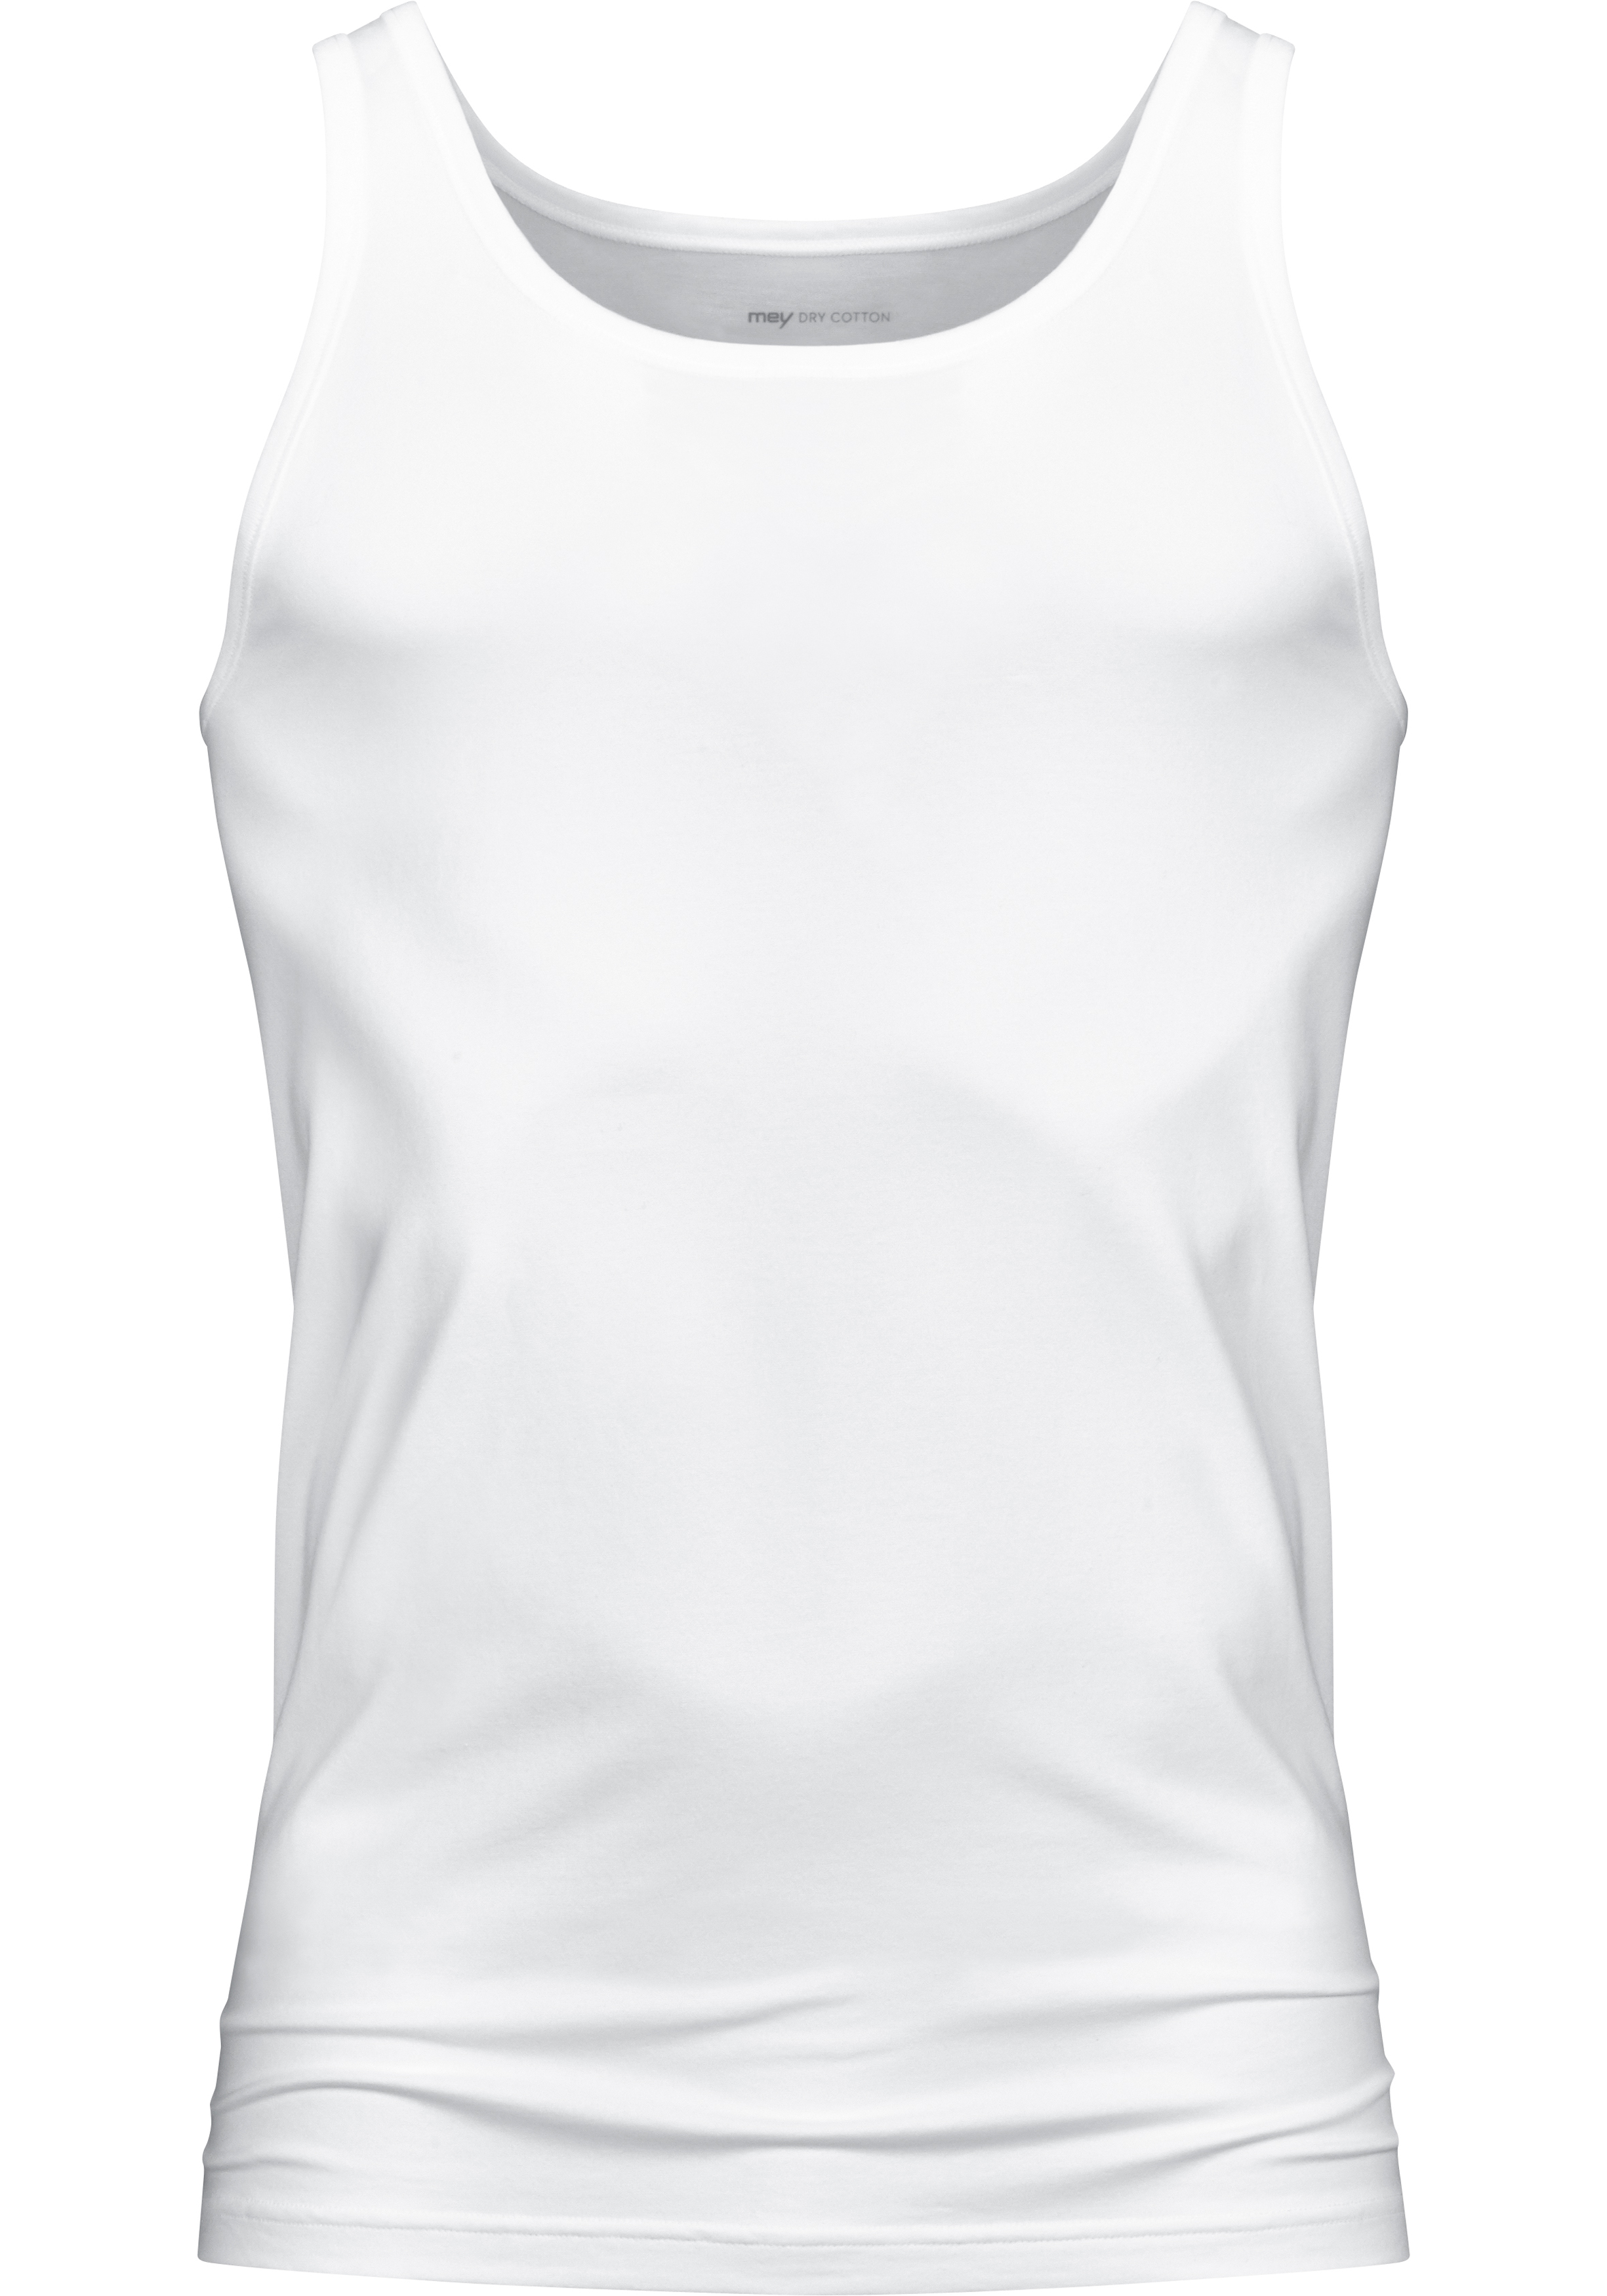 rustig aan Tact Yoghurt Mey Dry Cotton athletic shirt (1-pack), heren singlet, wit - Shop de  nieuwste voorjaarsmode